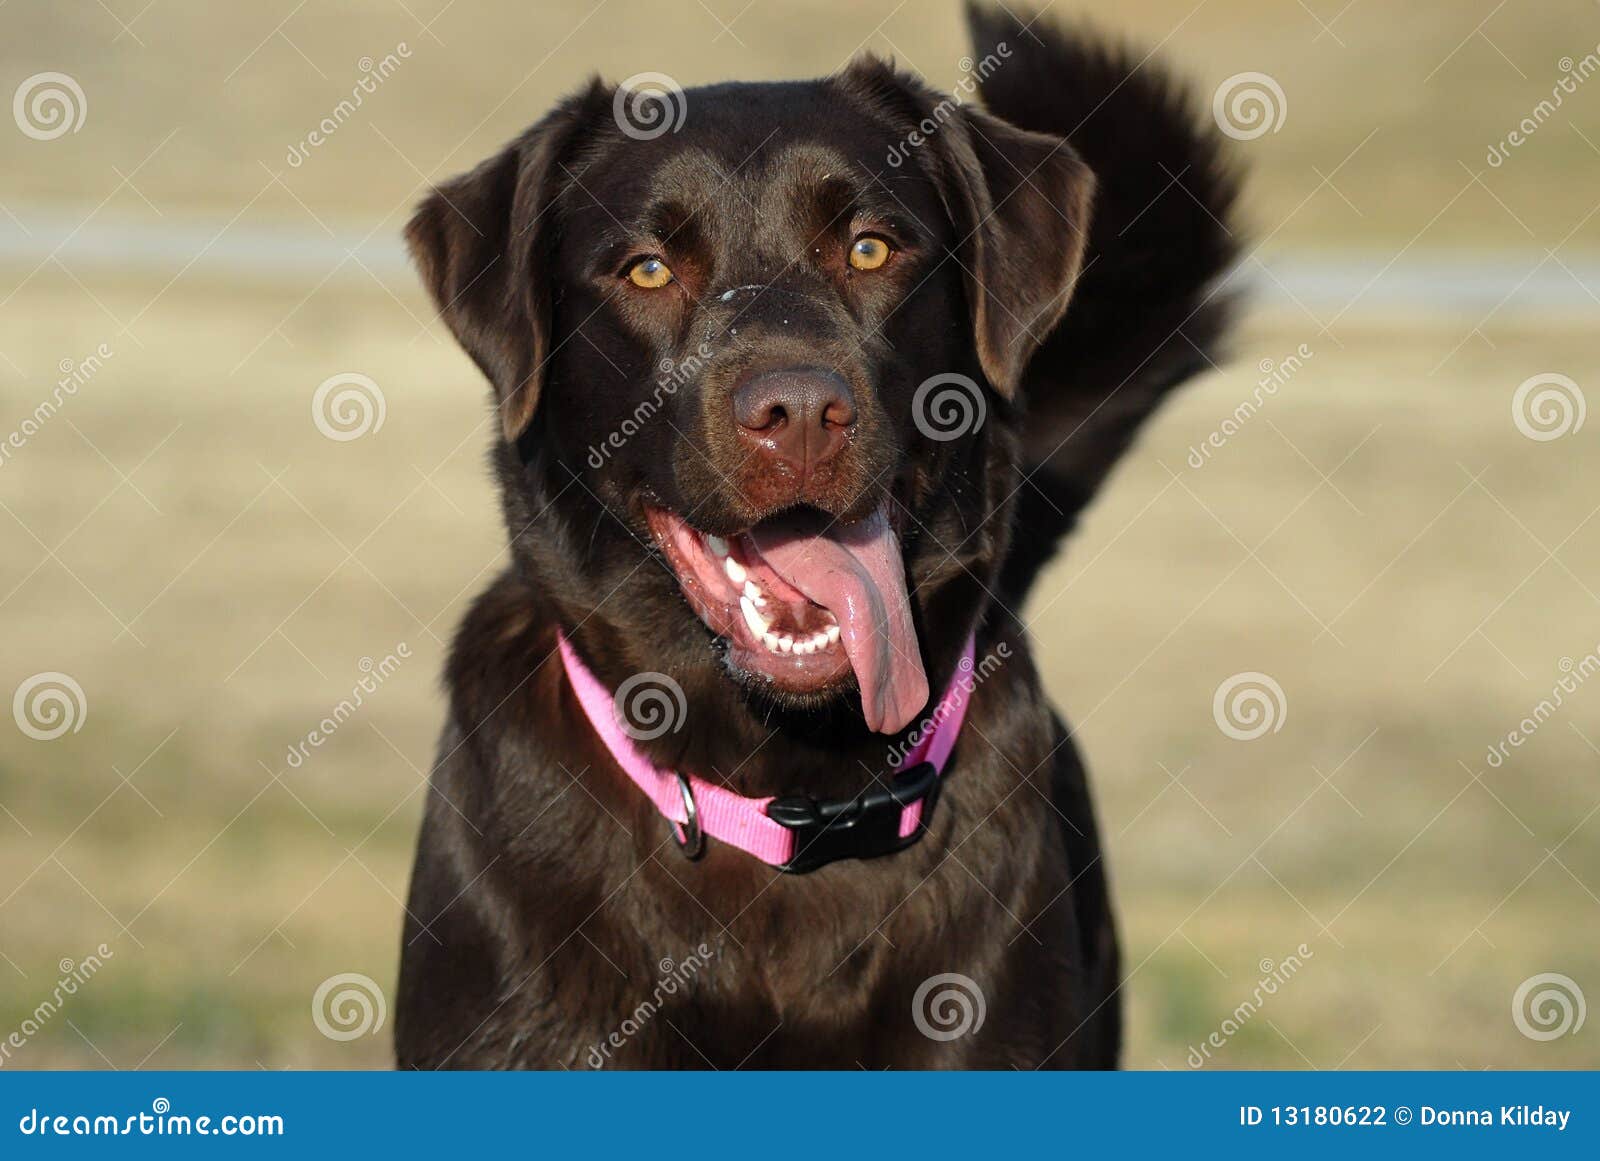 happy dog labrador retriever